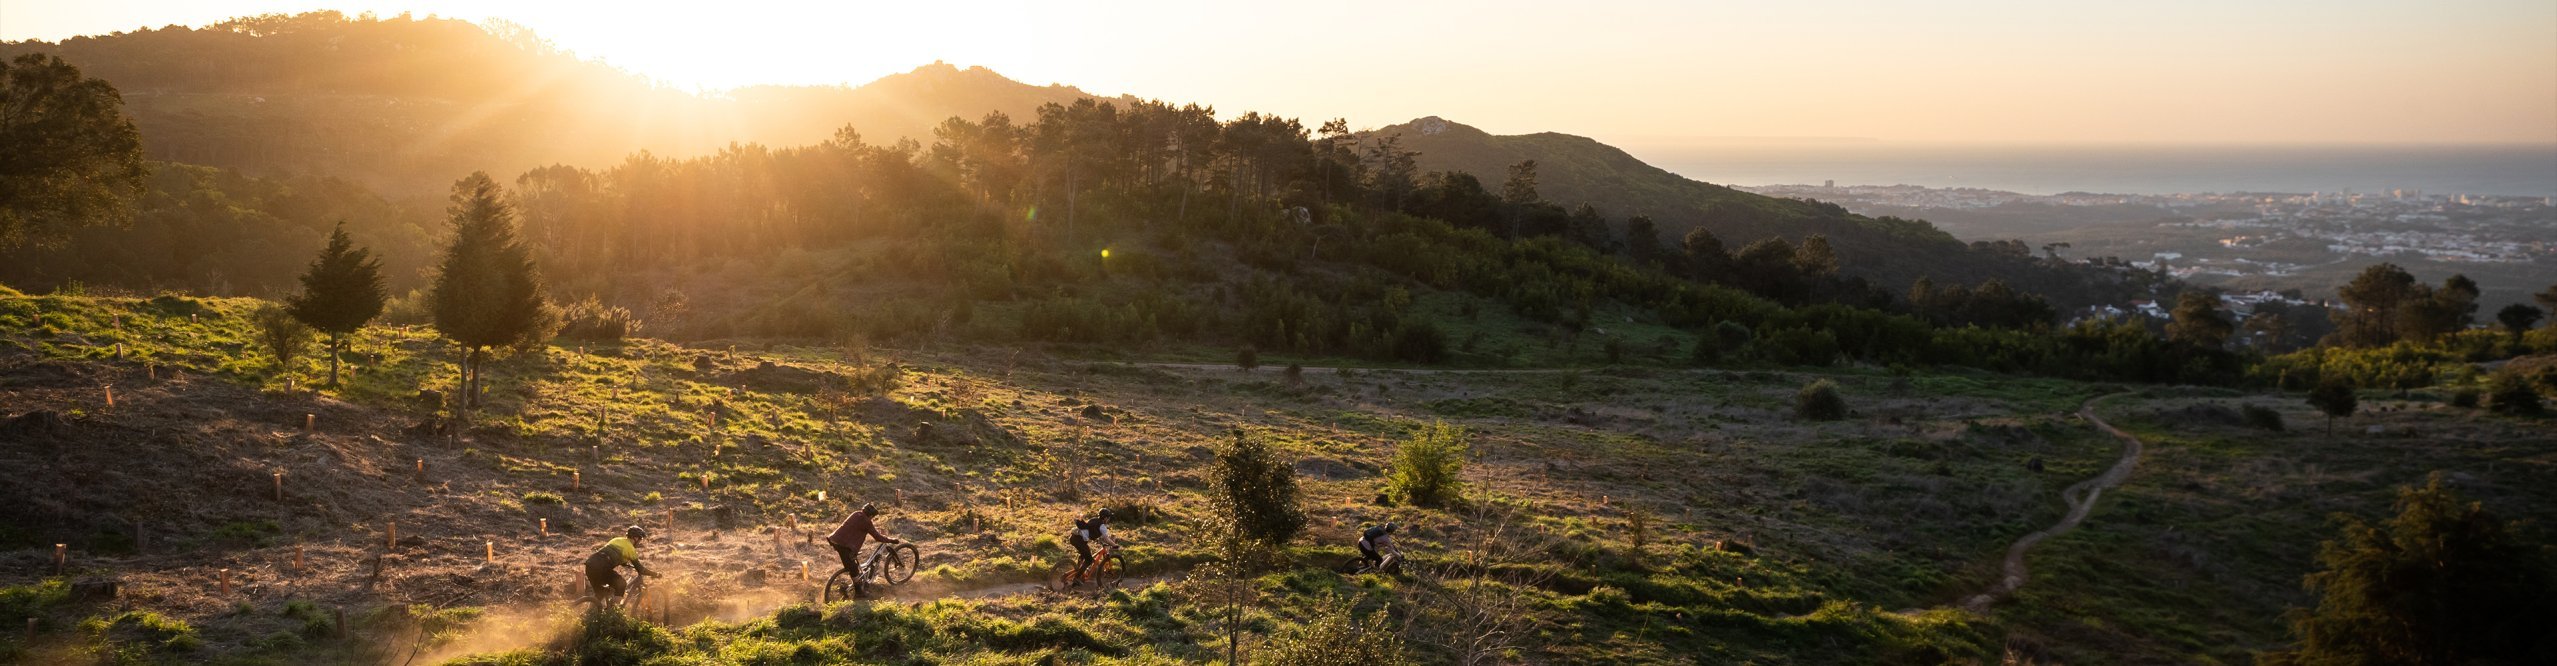 4 Mountainbiker im Sonnenuntergang auf Trail